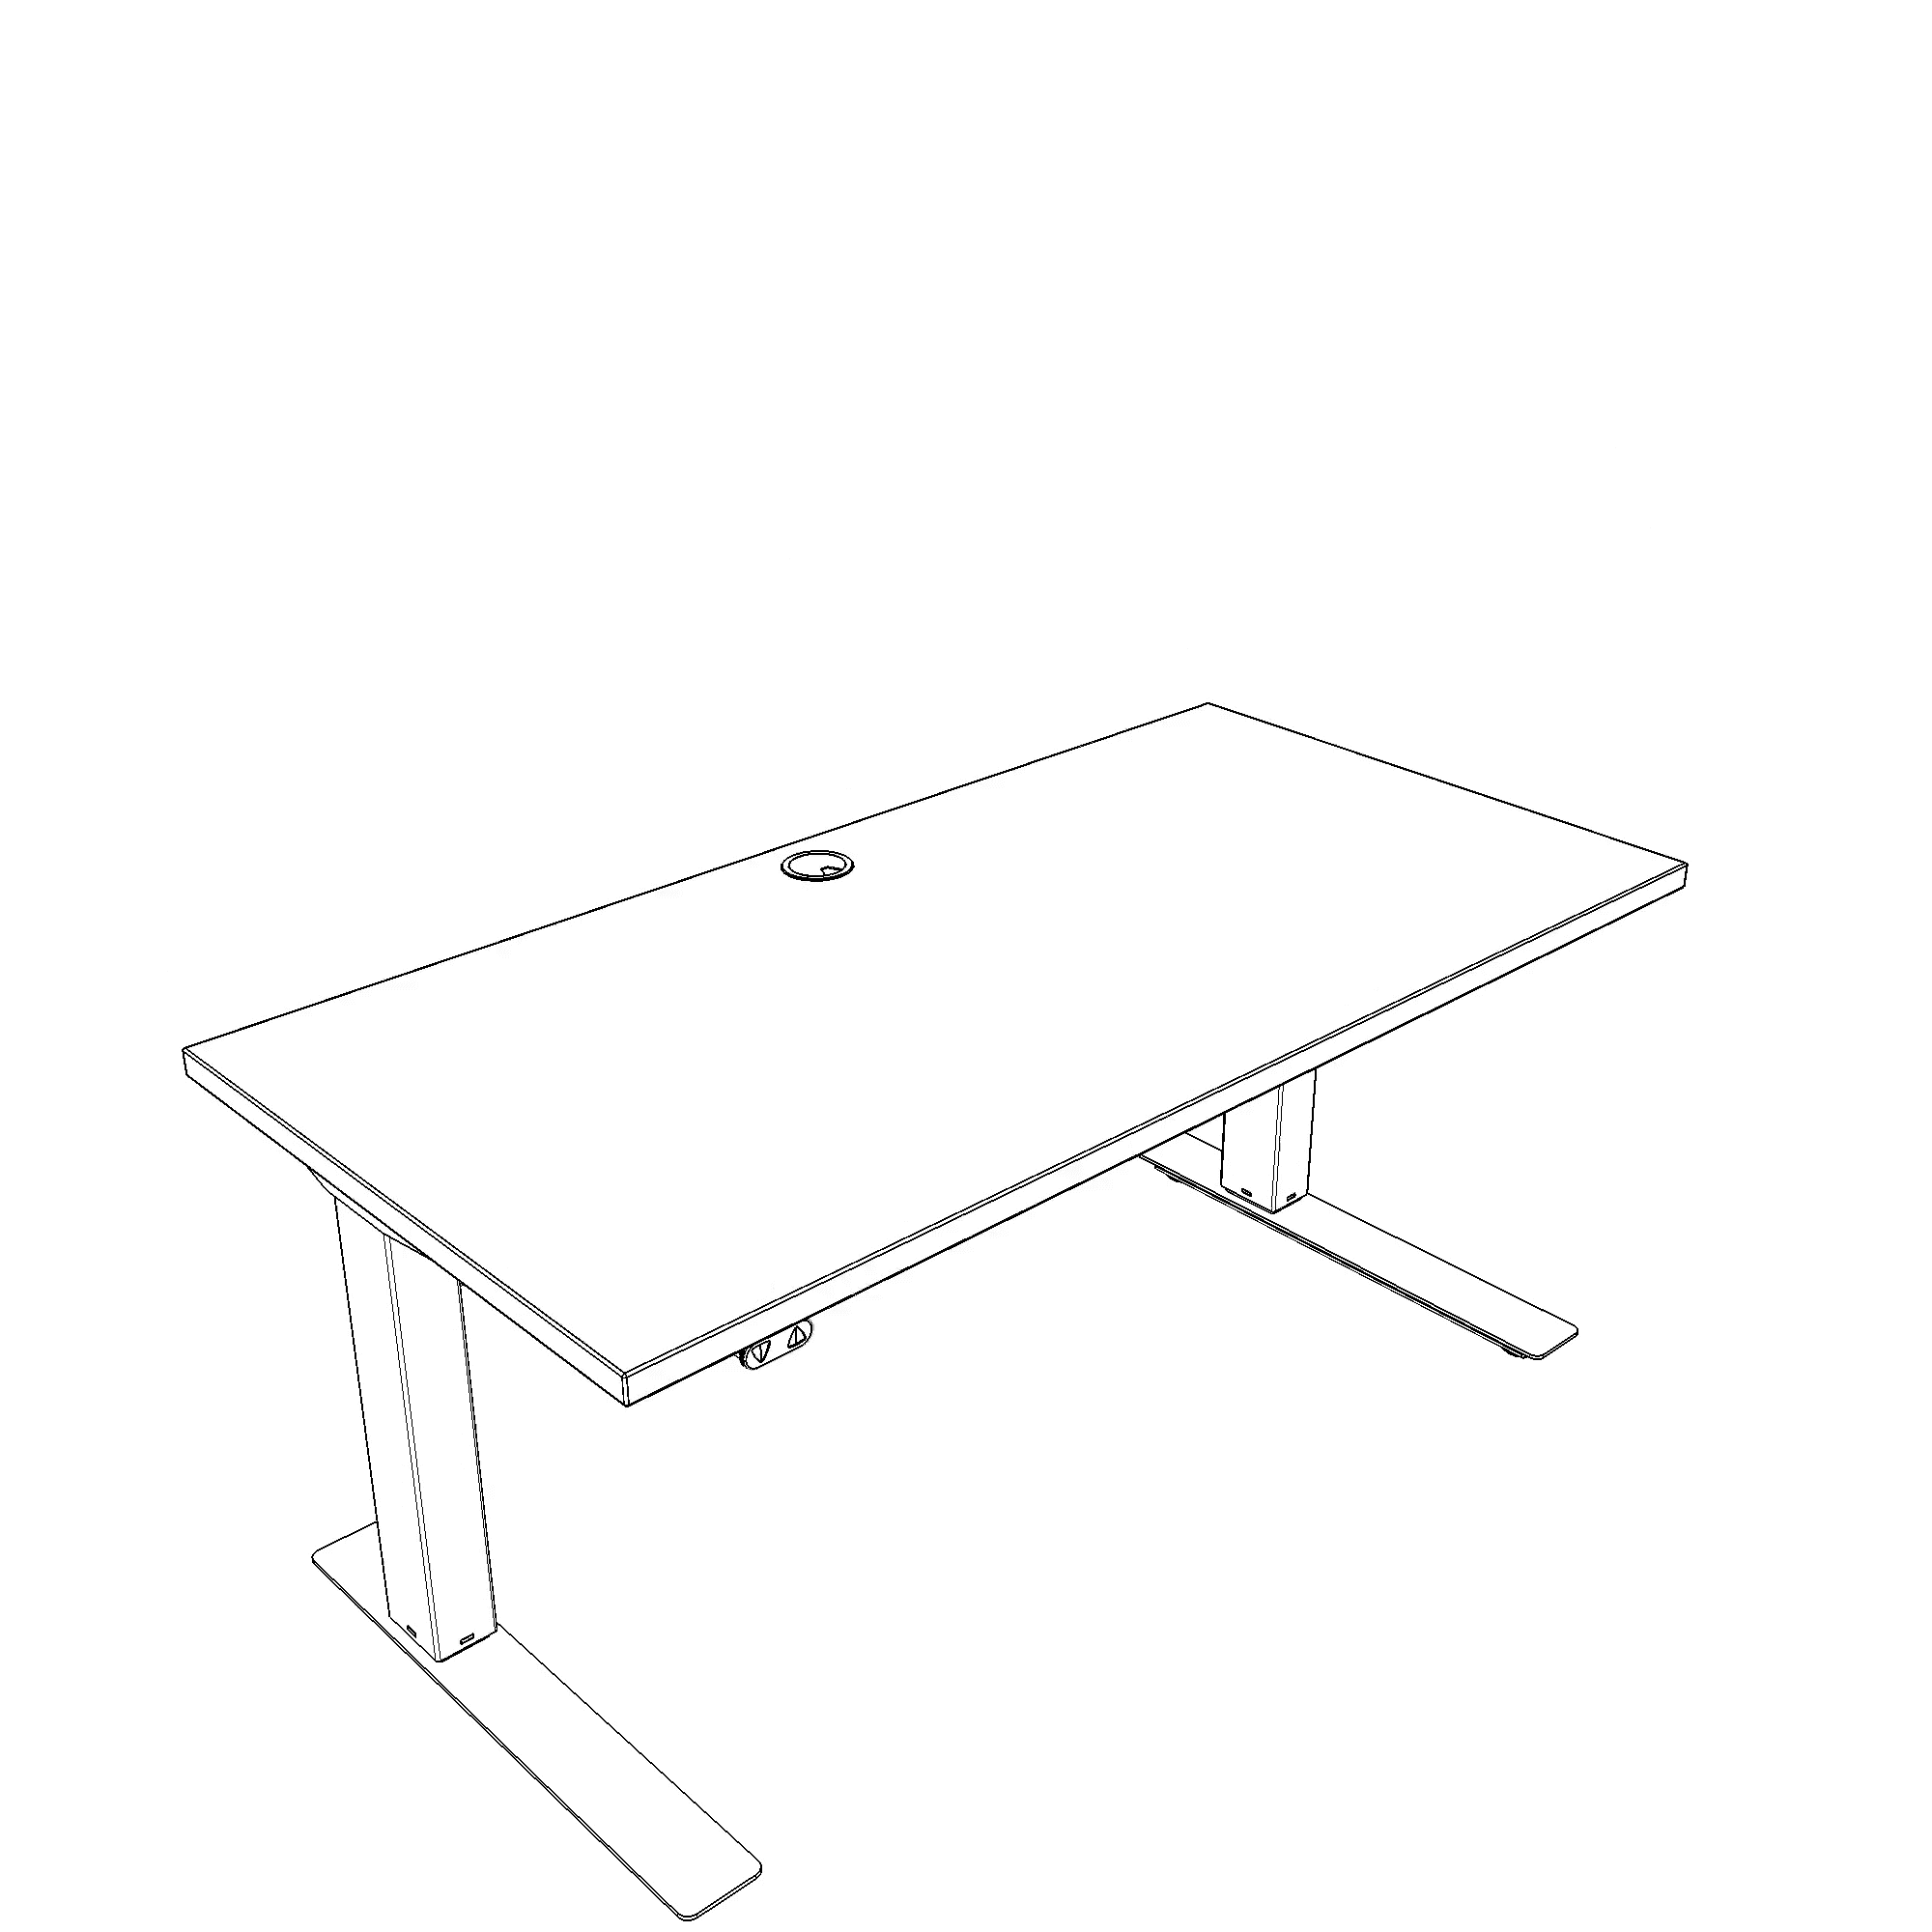 Elektrisch verstelbaar bureau | 120x60 cm | Walnoot met zwart frame